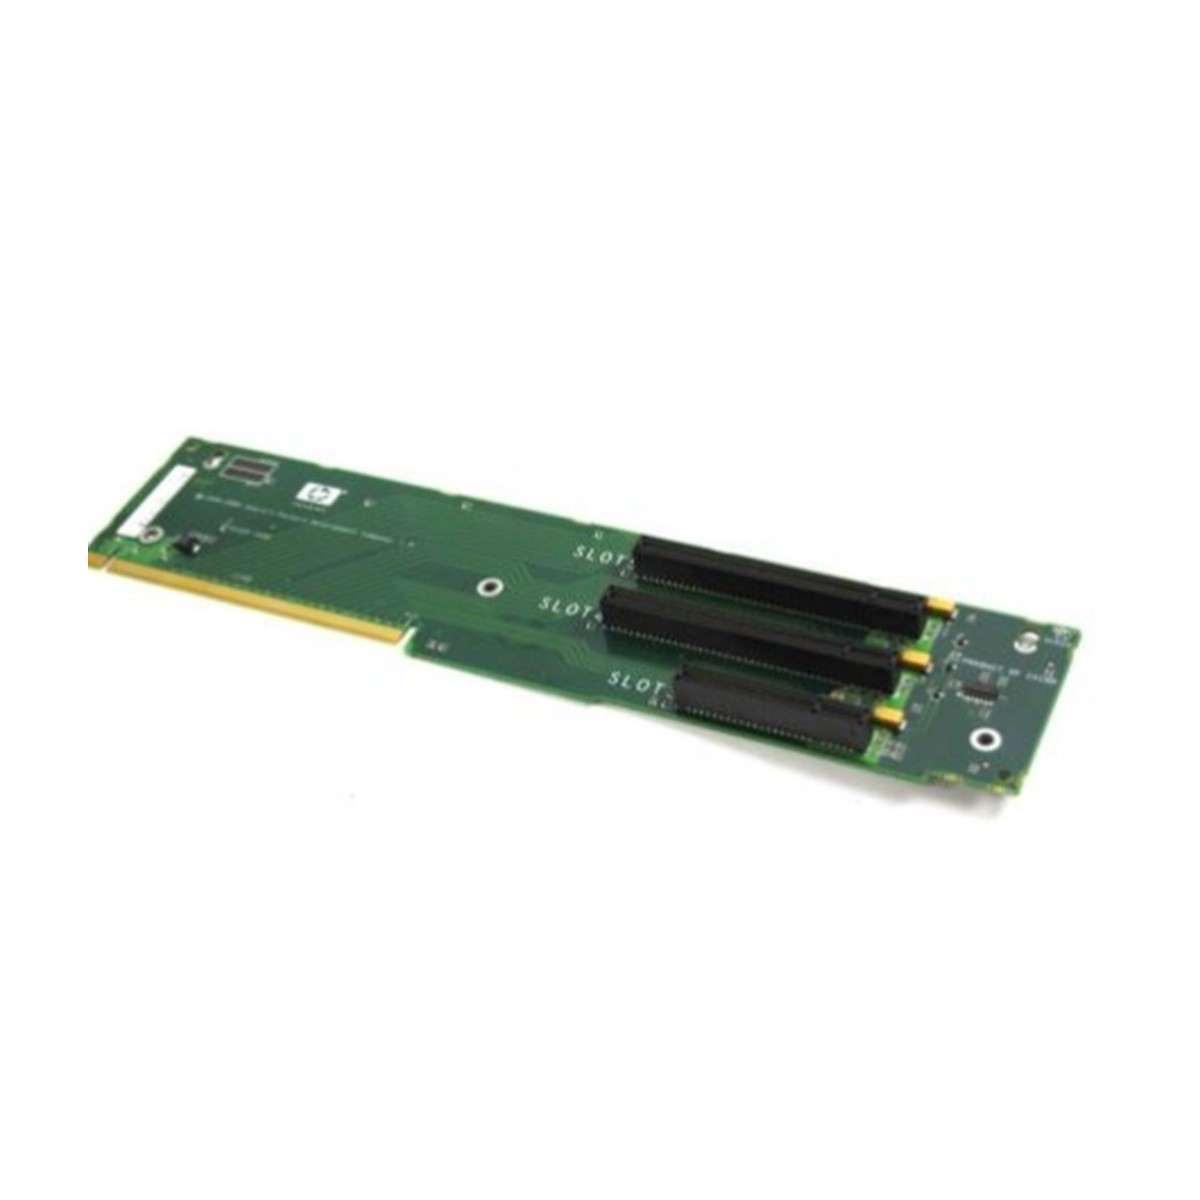 RISER HP PROLIANT DL380 G5 PCIX PCIE 408786-001